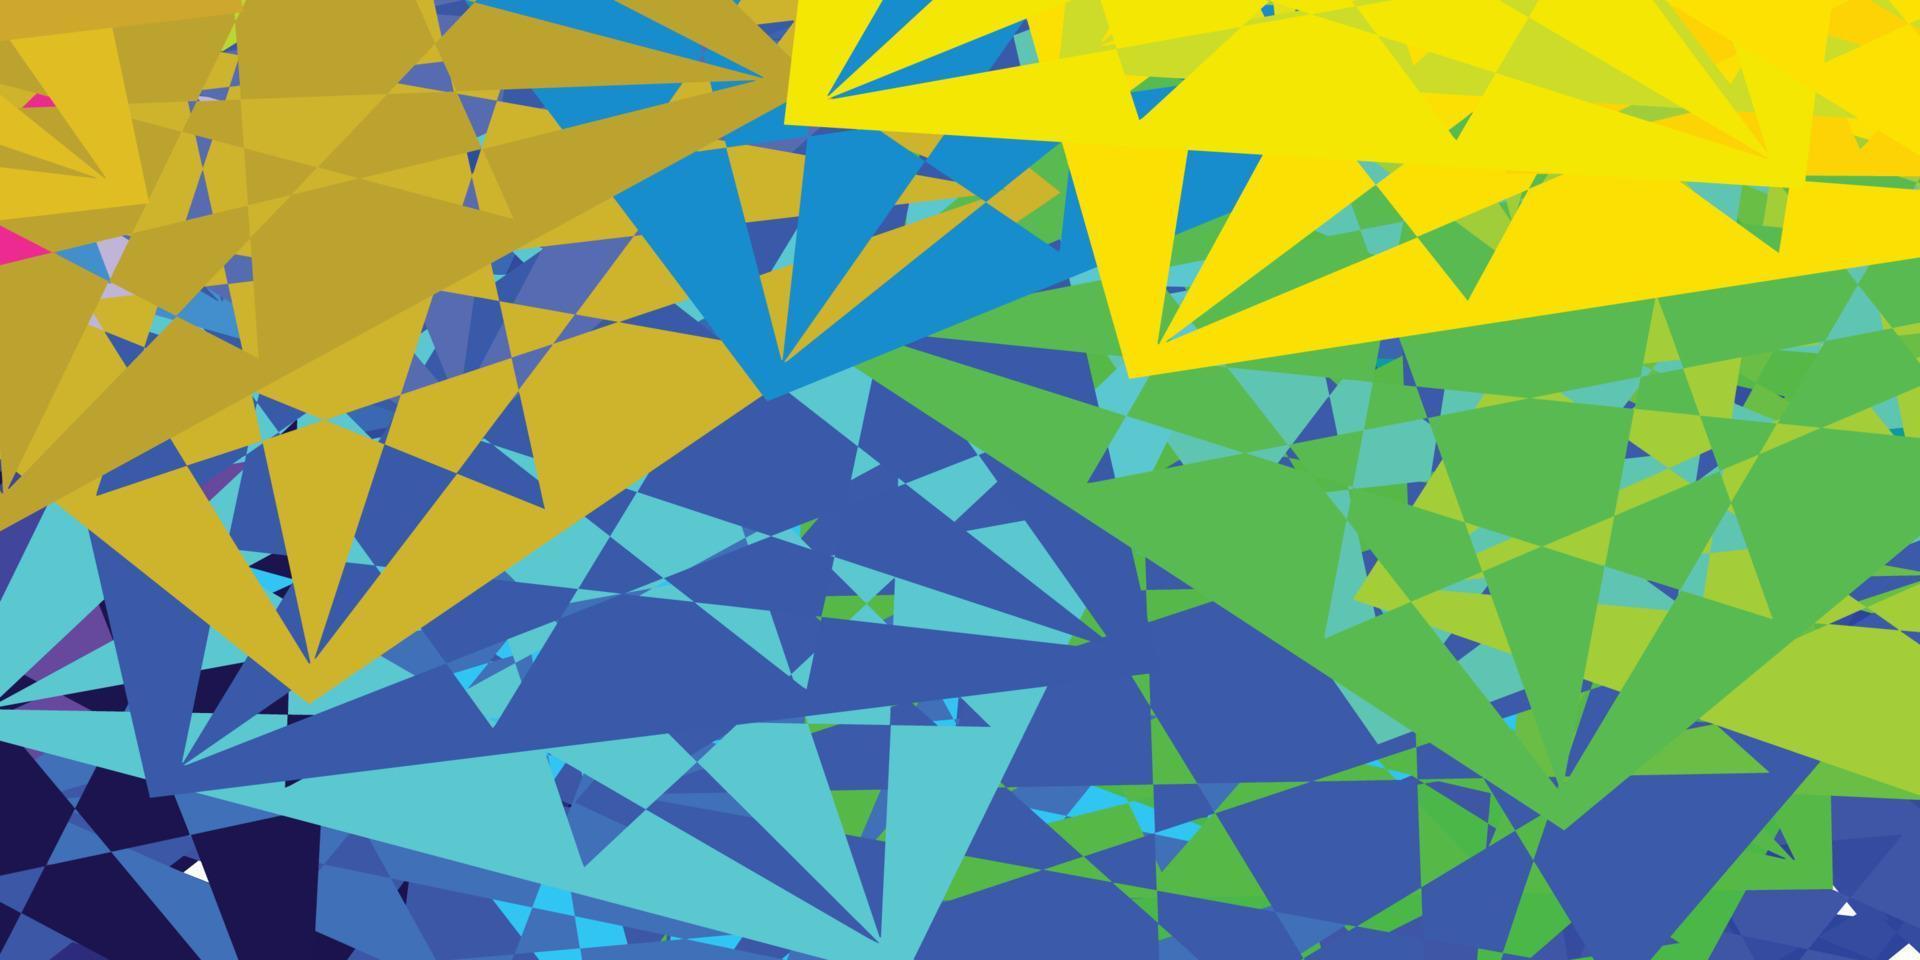 trama vettoriale multicolore leggera con triangoli casuali.